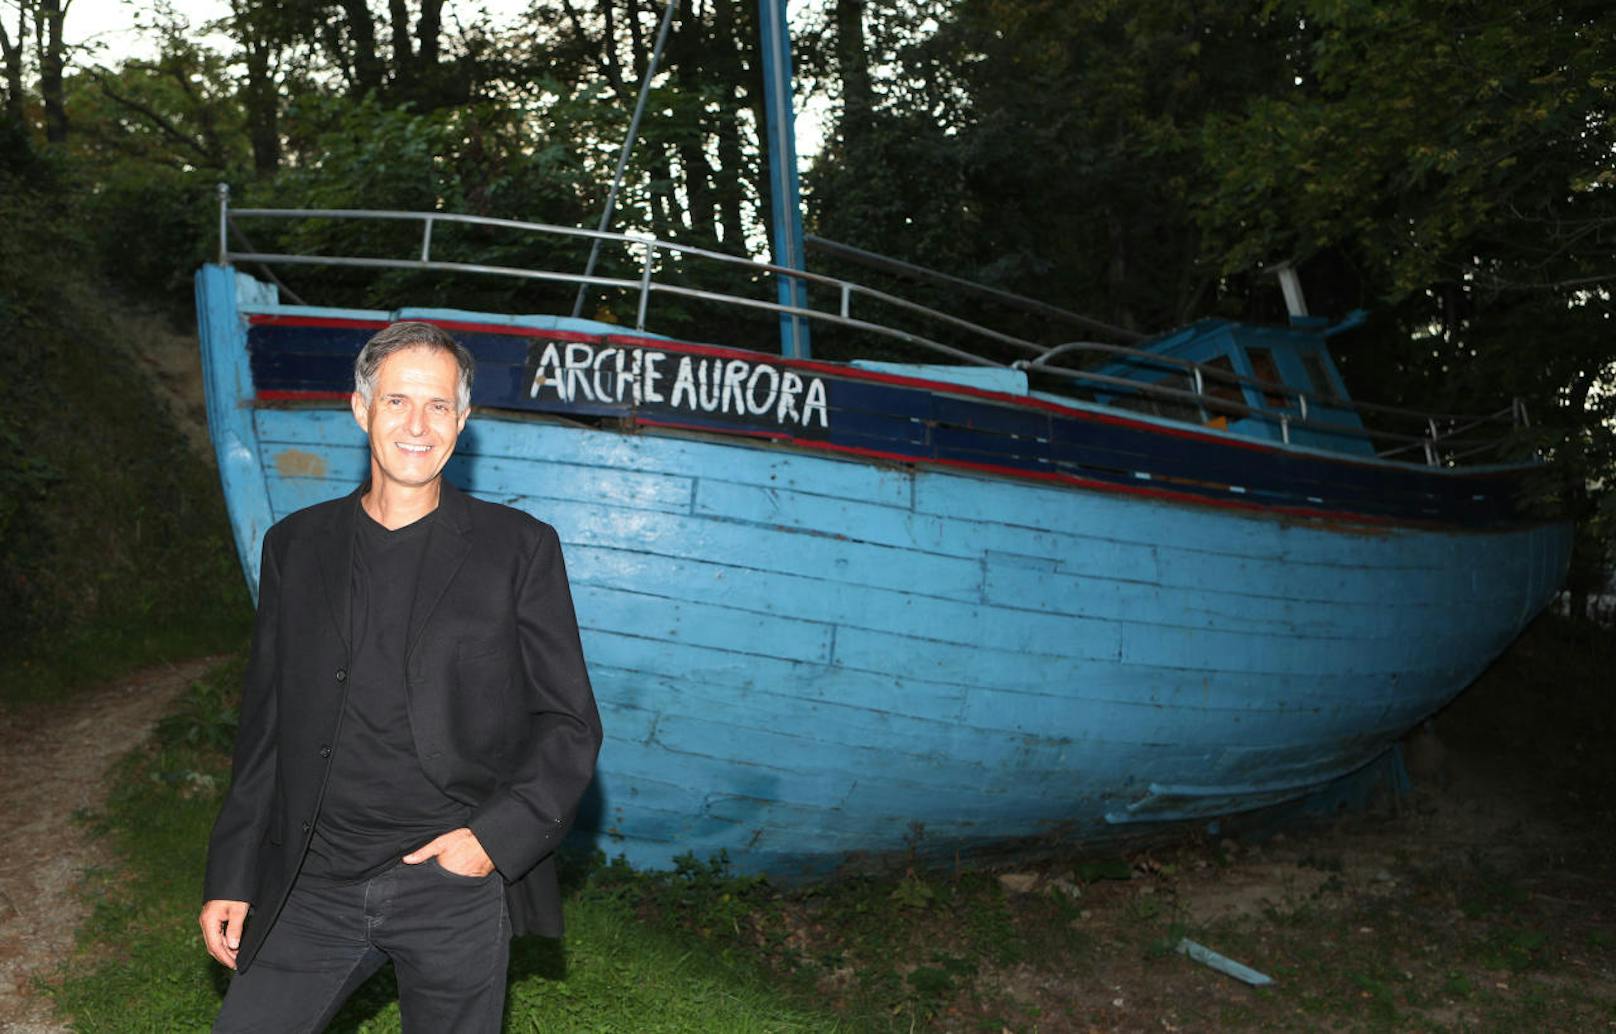 Nahe der "Arche Aurora" - einem alten Fischkutter mitten am Wilhelminenberg -, die in Peters Krimi zur "Titanic für Zyniker" wird, entledigt sich der Autor gleich zwei seiner Buchcharaktere. (c) Christian Ort